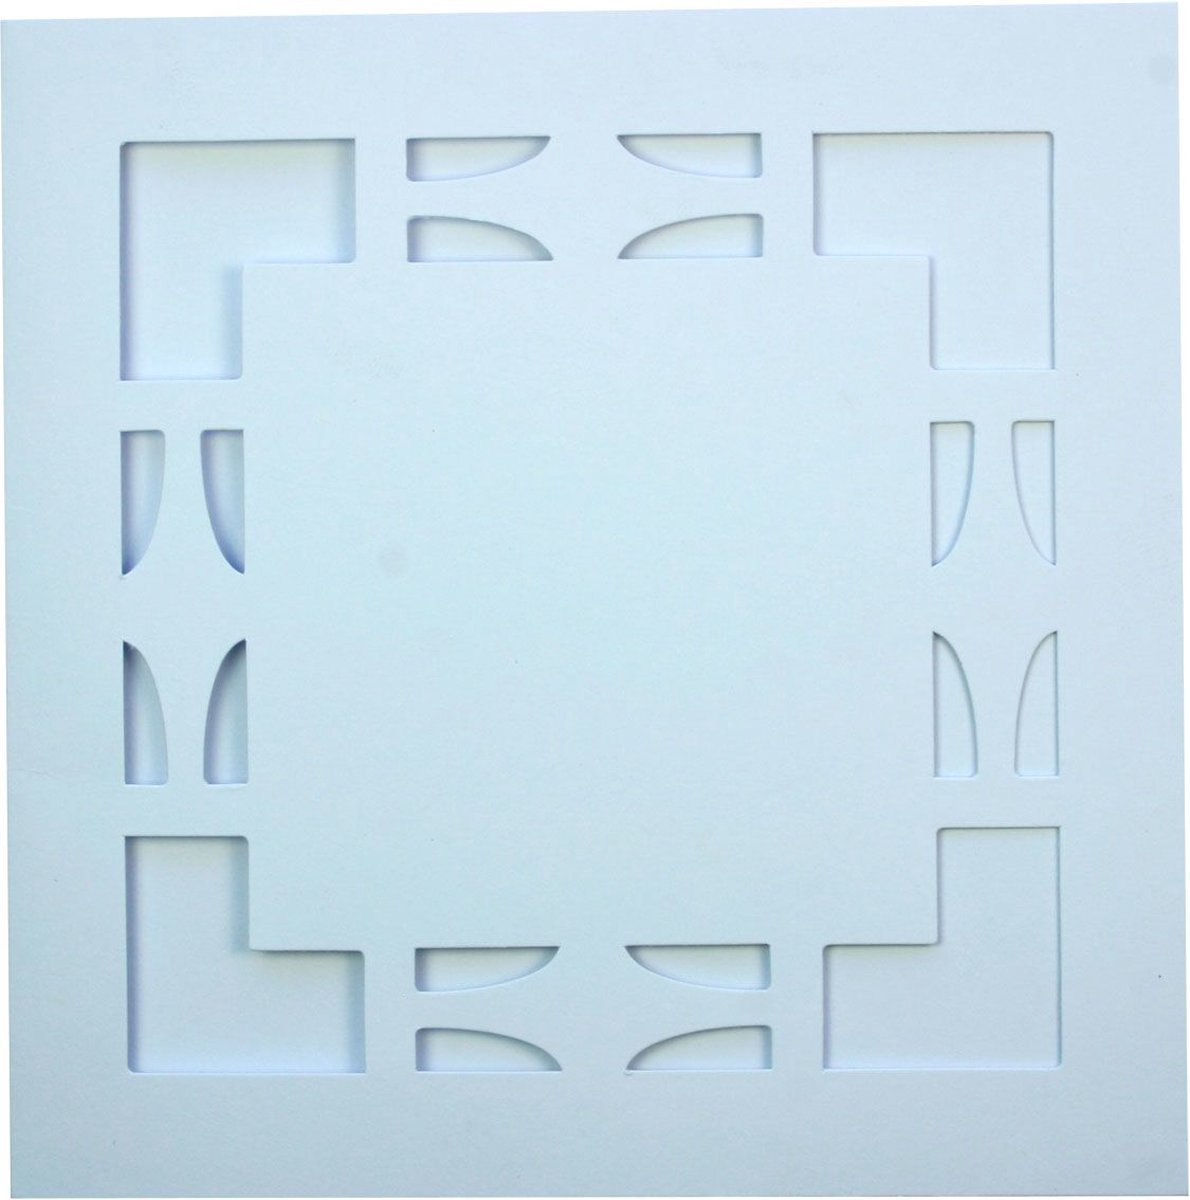 Vierkante Stans Kaarten Set - Vierkant 13,5 x 13,5cm - 36 dubbele Kaarten en 36 enveloppen - Wit - Maak wenskaarten voor elke gelegenheid